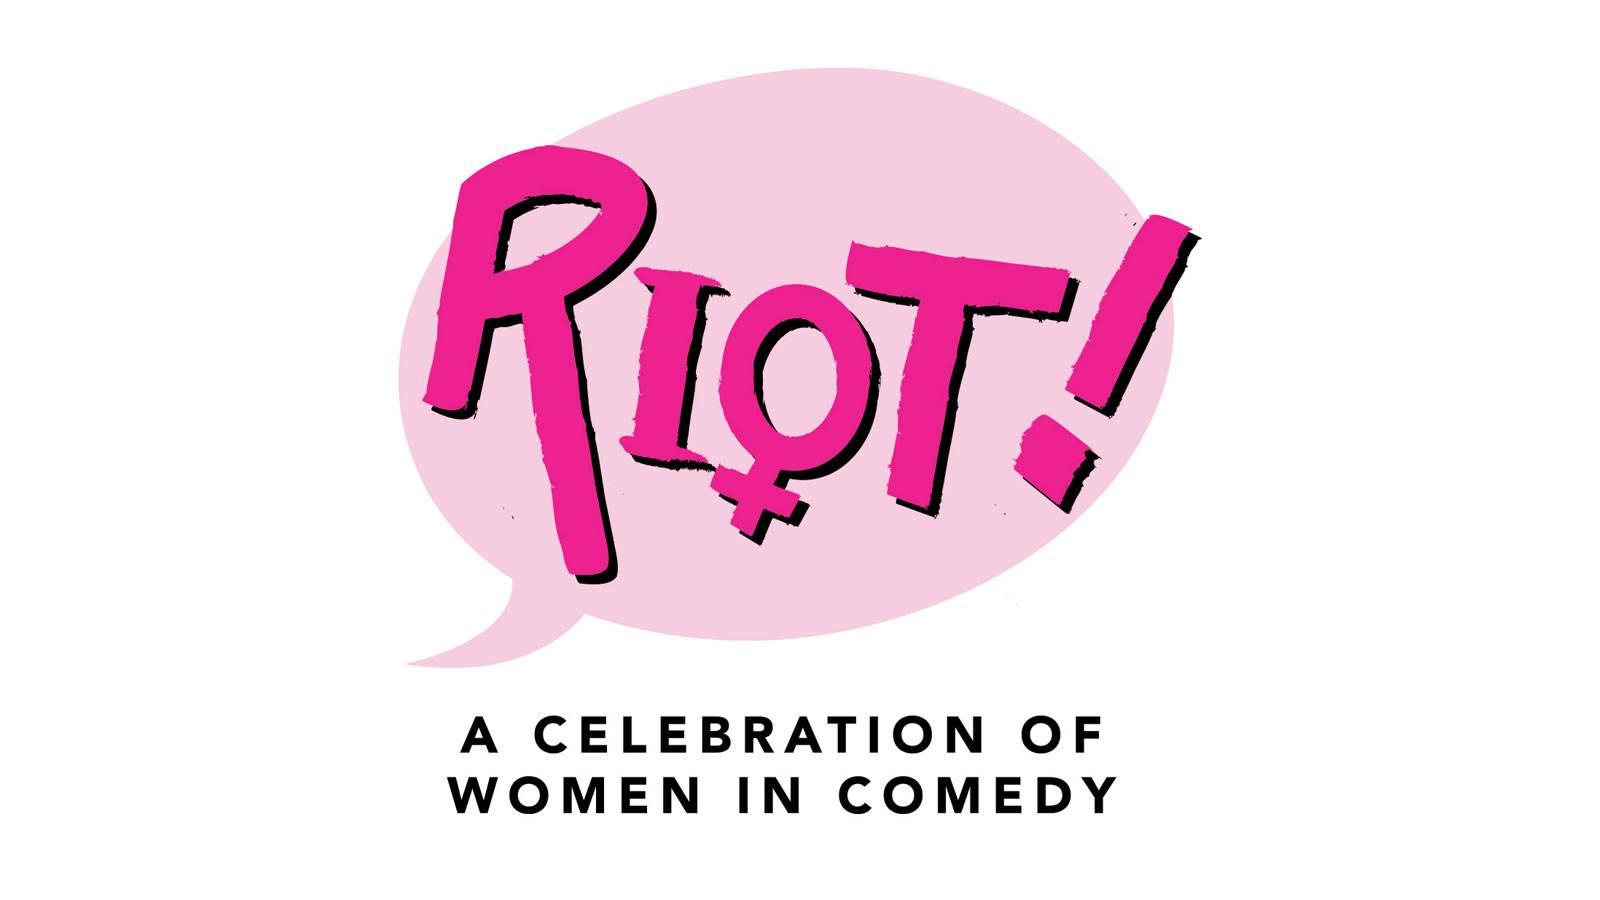 RIOT! An International Women's Day Comedy Event